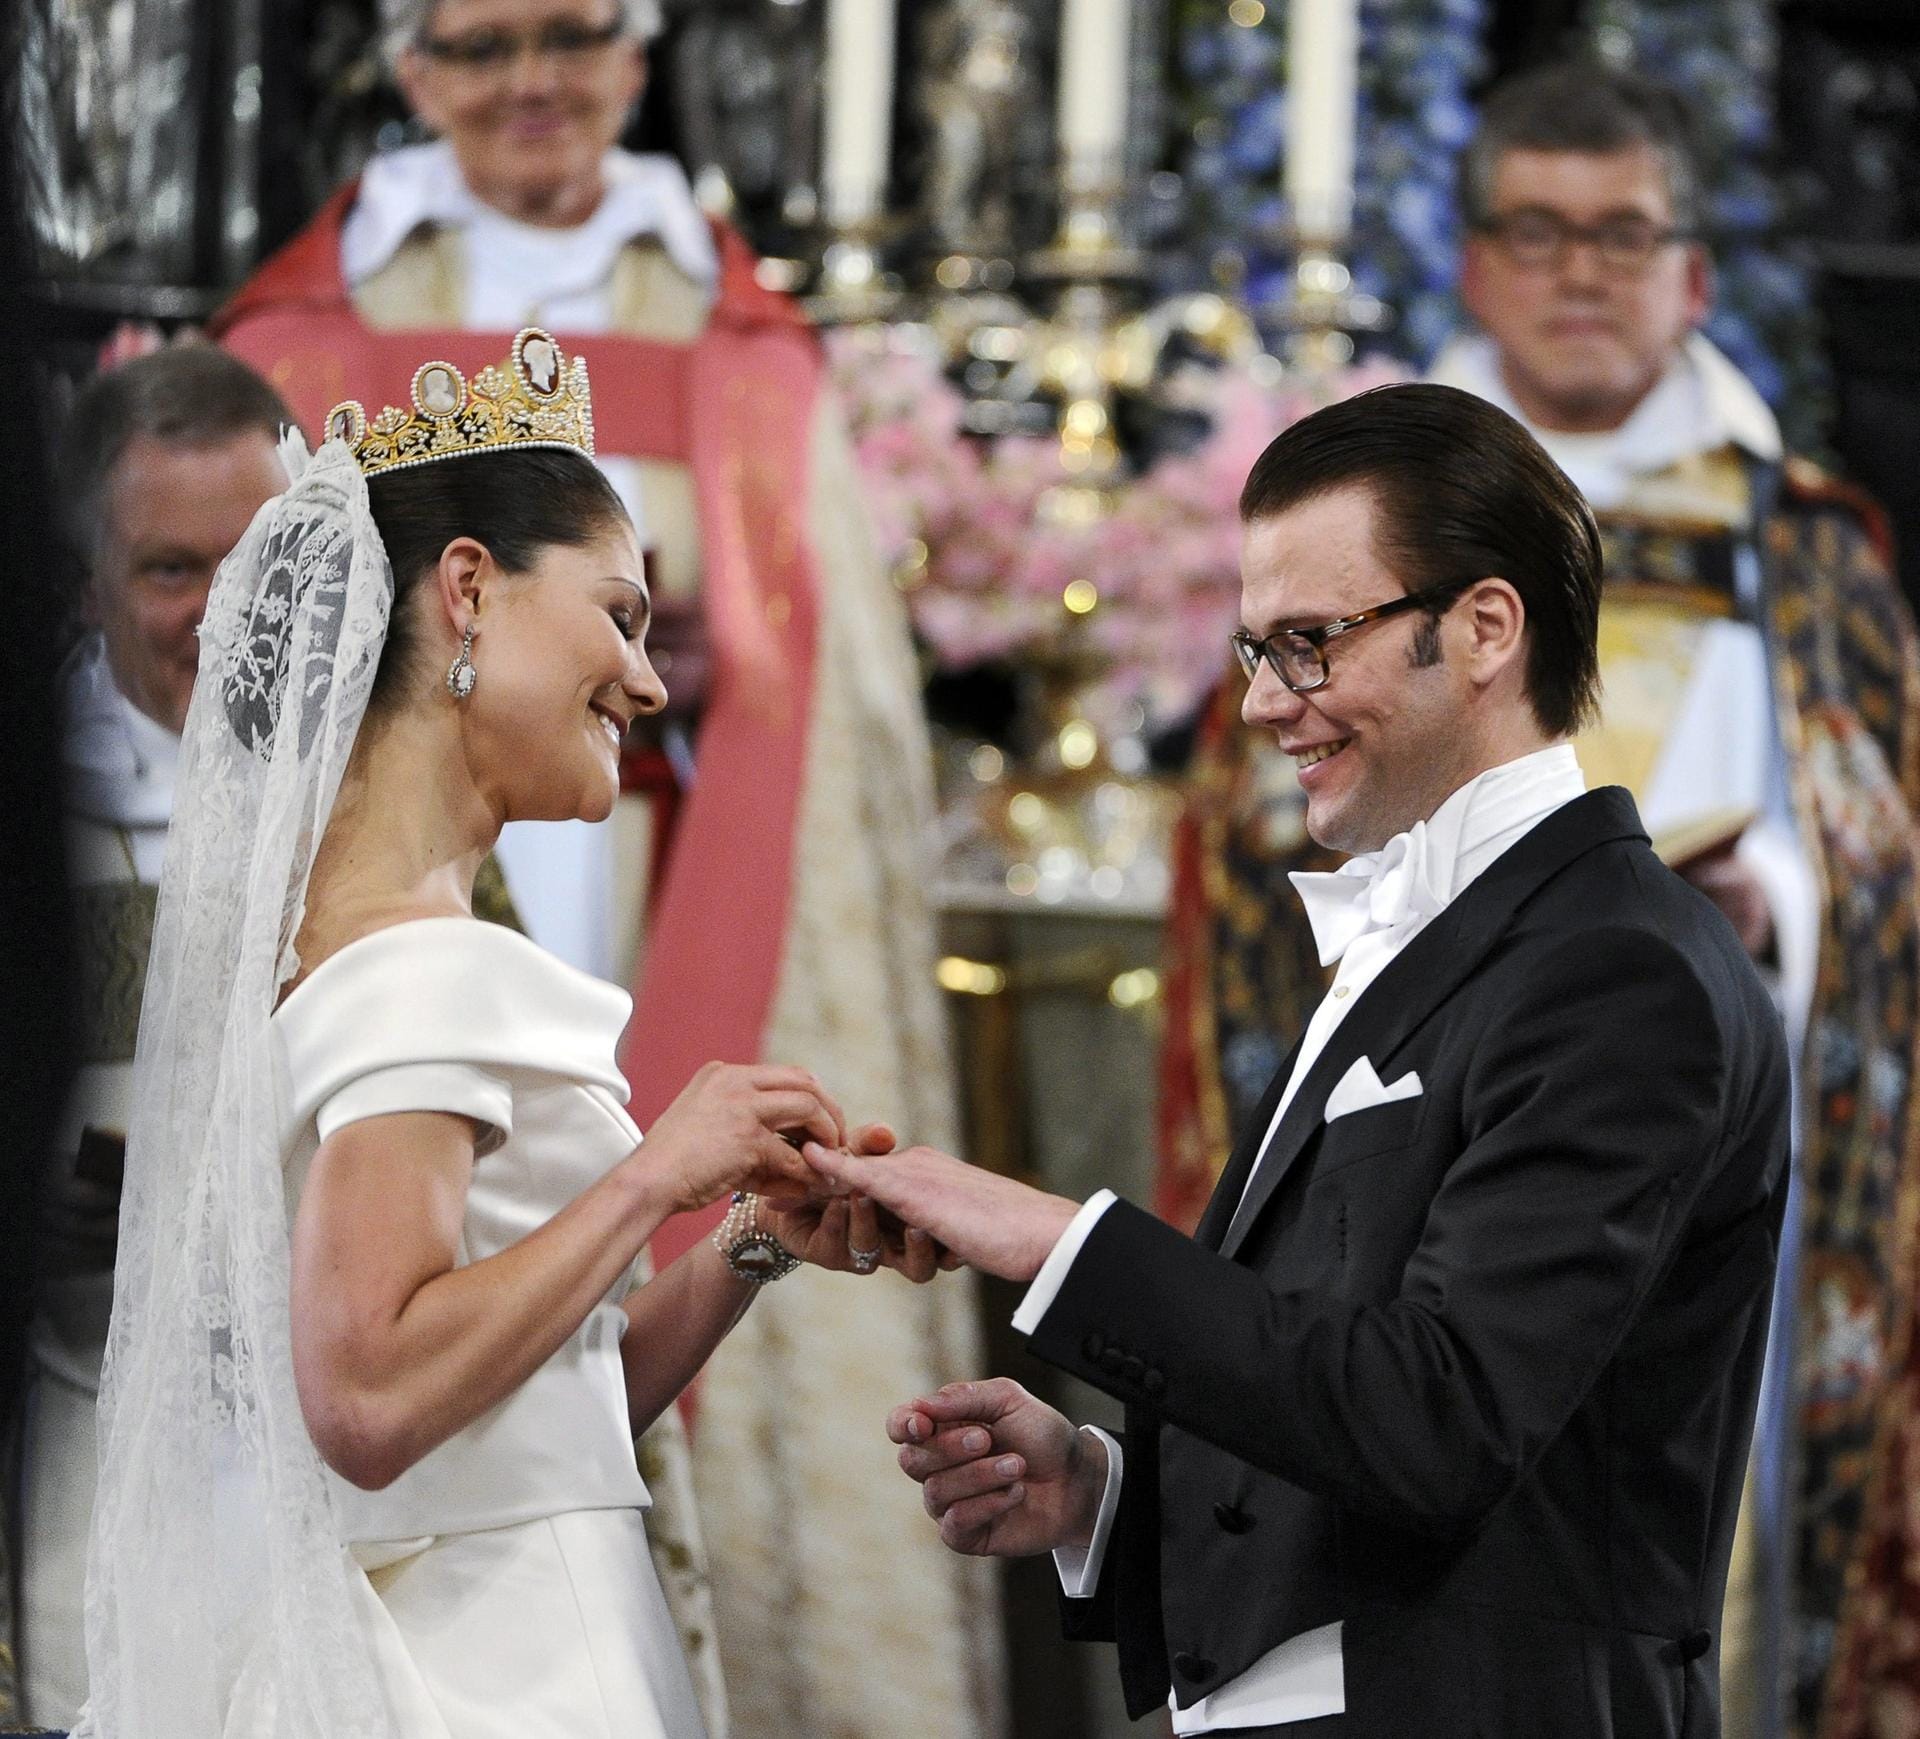 Ihre Hochzeit war ebenfalls ein Adelsevent: Im Juni 2010 gelobte Prinzessin Victoria von Schweden ihrem ehemaligen Fitnesstrainer Daniel Westling die ewige Treue - und sah in ihrem schlichten cremefarbenen Seidenkleid einfach umwerfend aus.